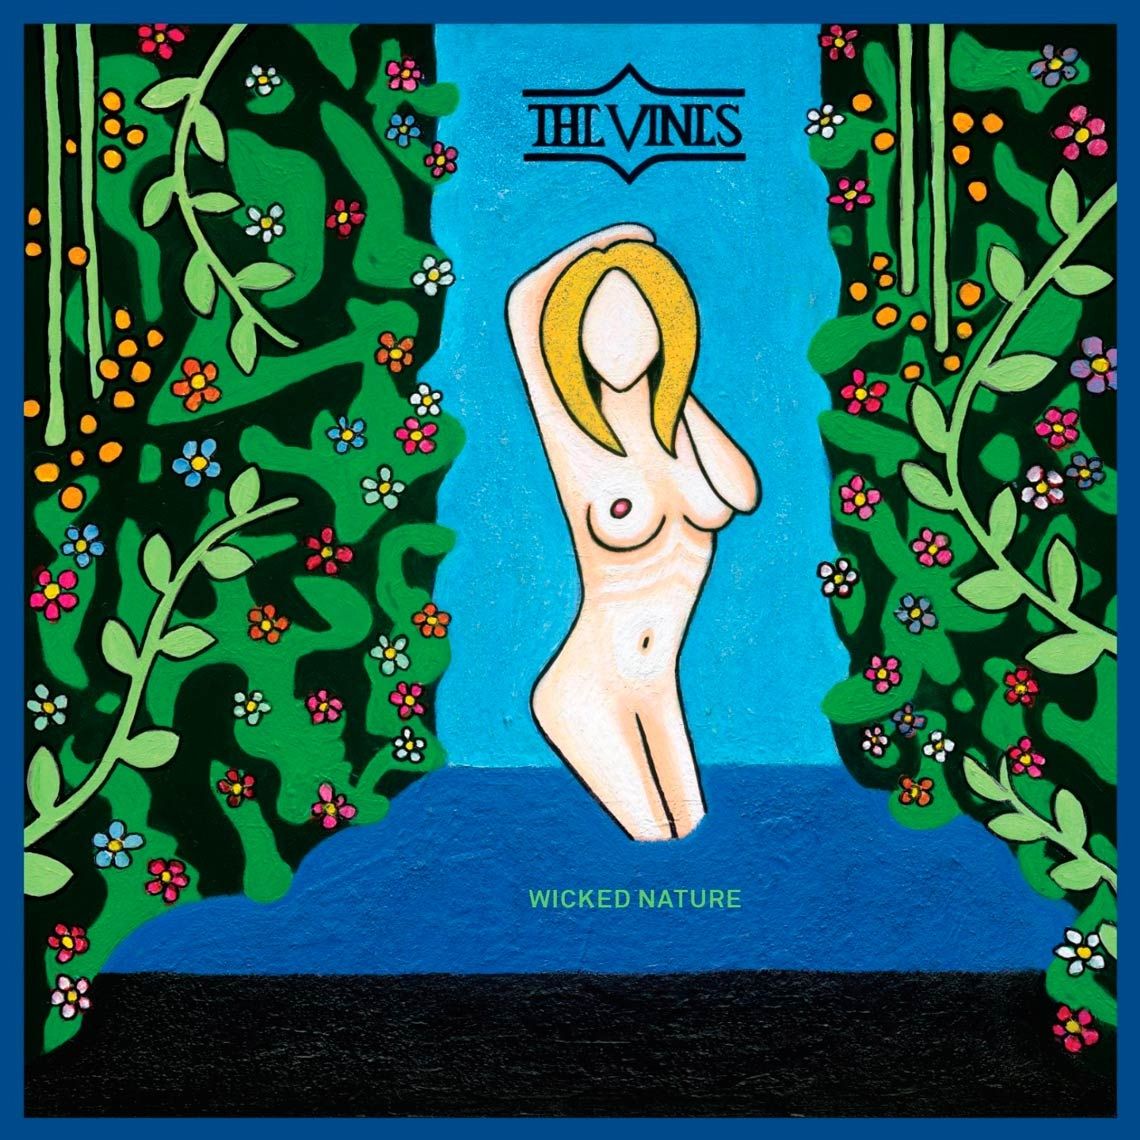 Imagem do álbum Wicked Nature do(a) artista The Vines